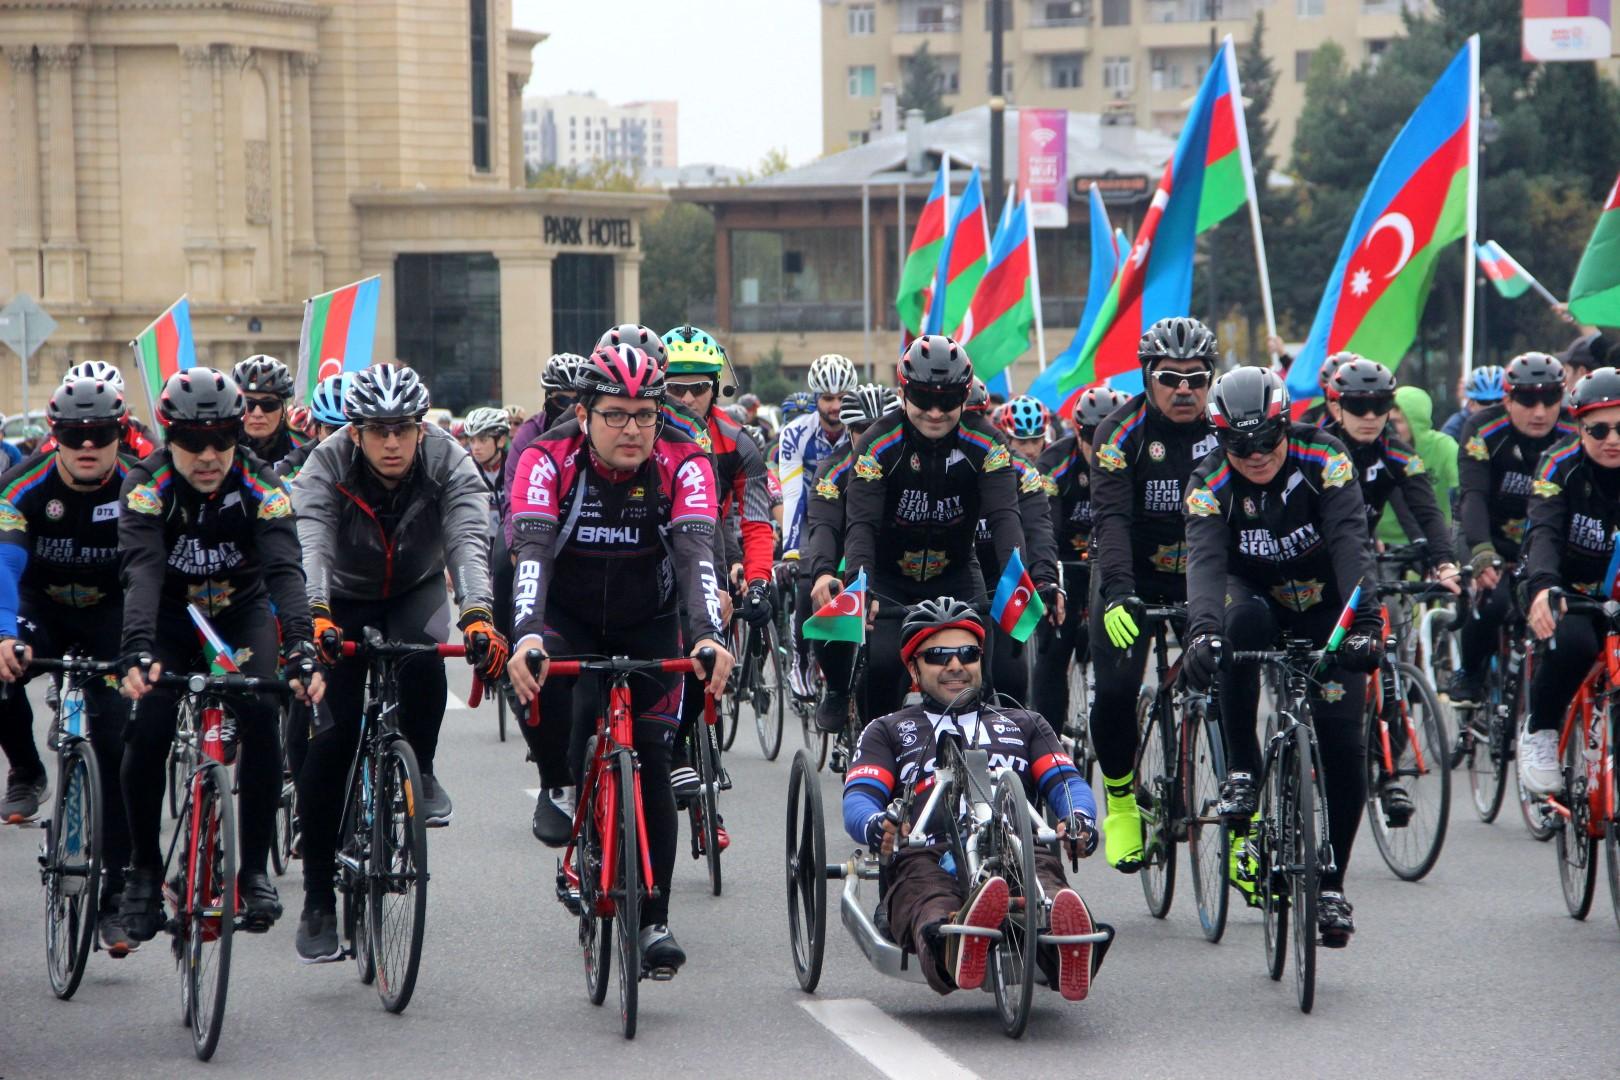 Bakıda veloyürüş:  Mədət Quliyev velosiped sürdü (FOTO)